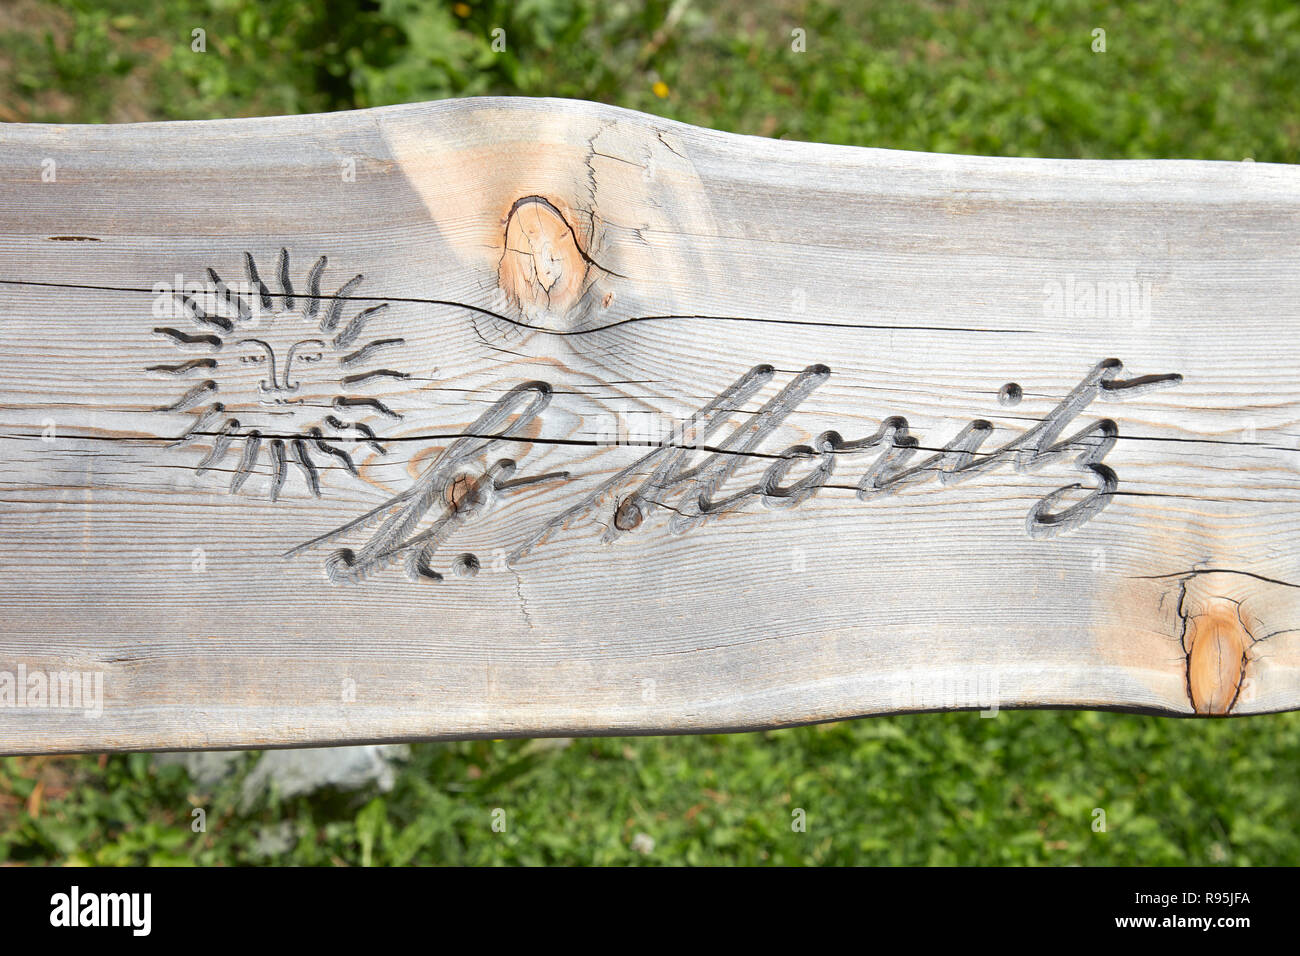 SANKT MORITZ, SCHWEIZ - 16. AUGUST 2018: Stadt logo mit Sonne in Holzbank plank an einem sonnigen Sommertag in Sankt Moritz, Schweiz geschnitzt Stockfoto